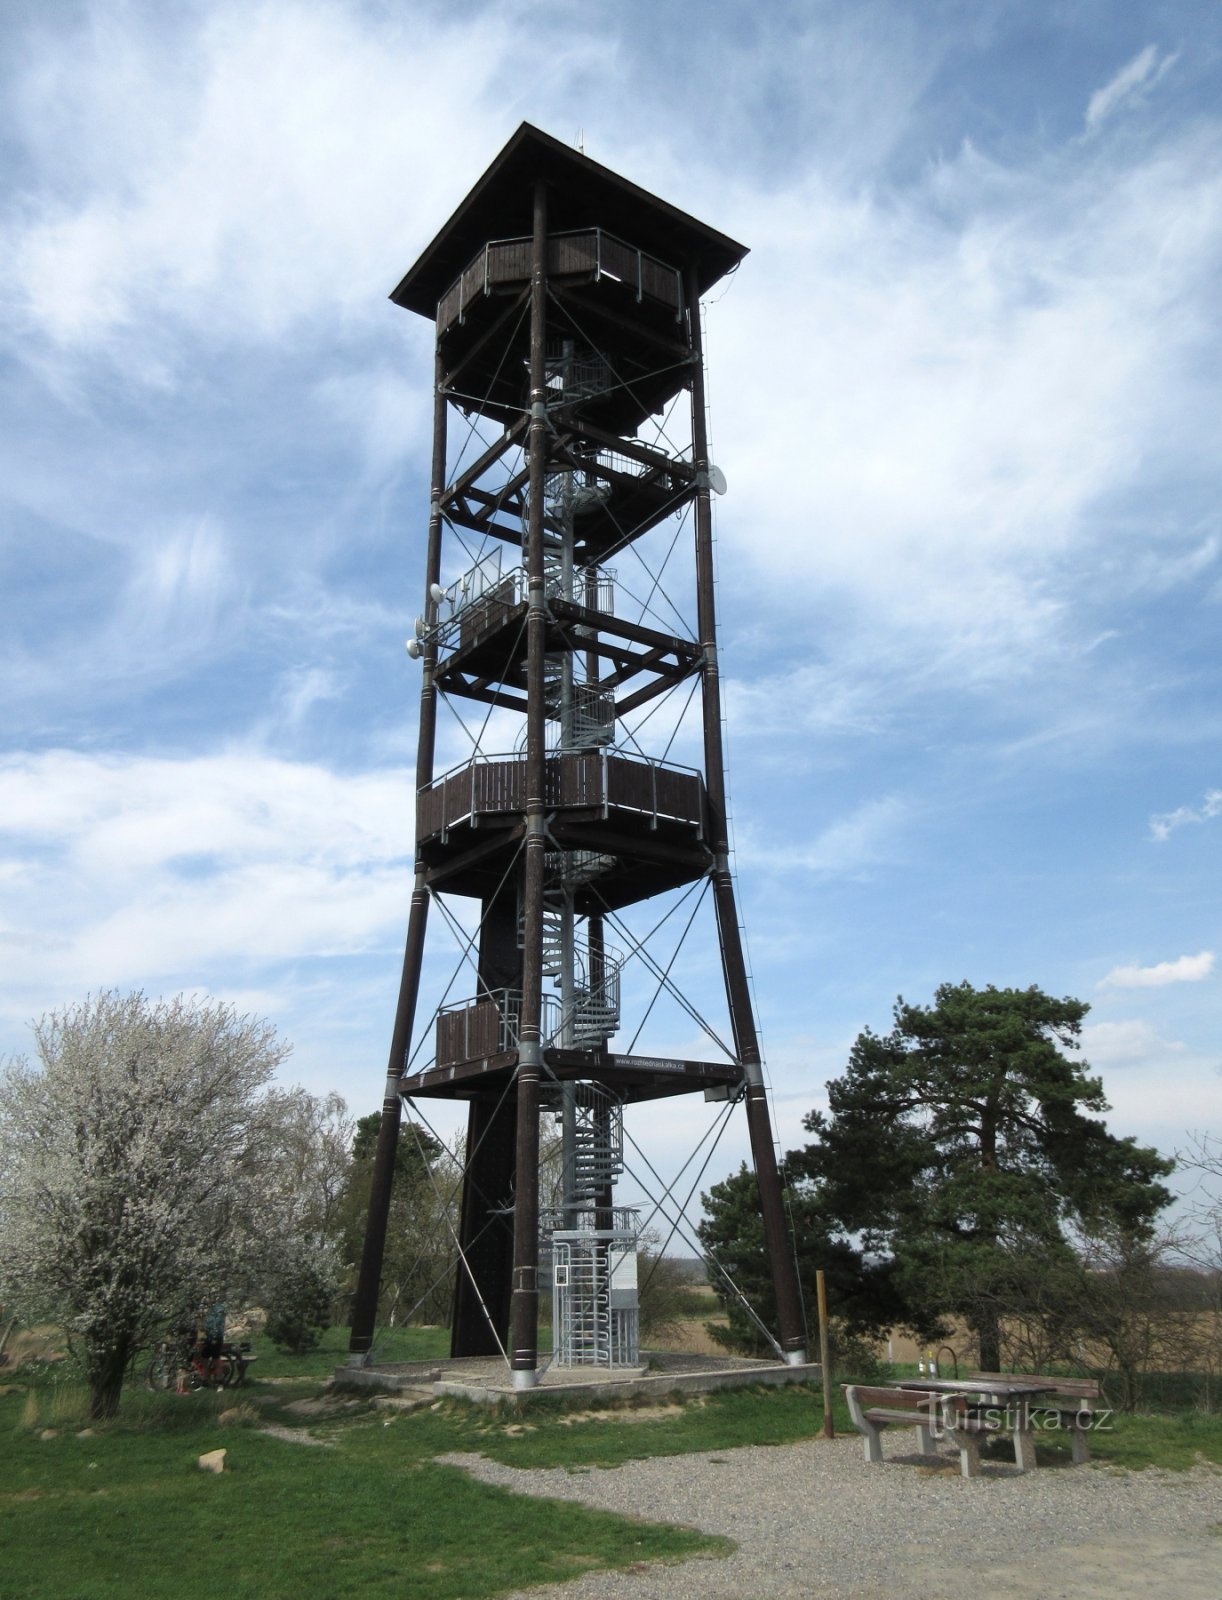 Vyžlovka - torre di avvistamento Skalka